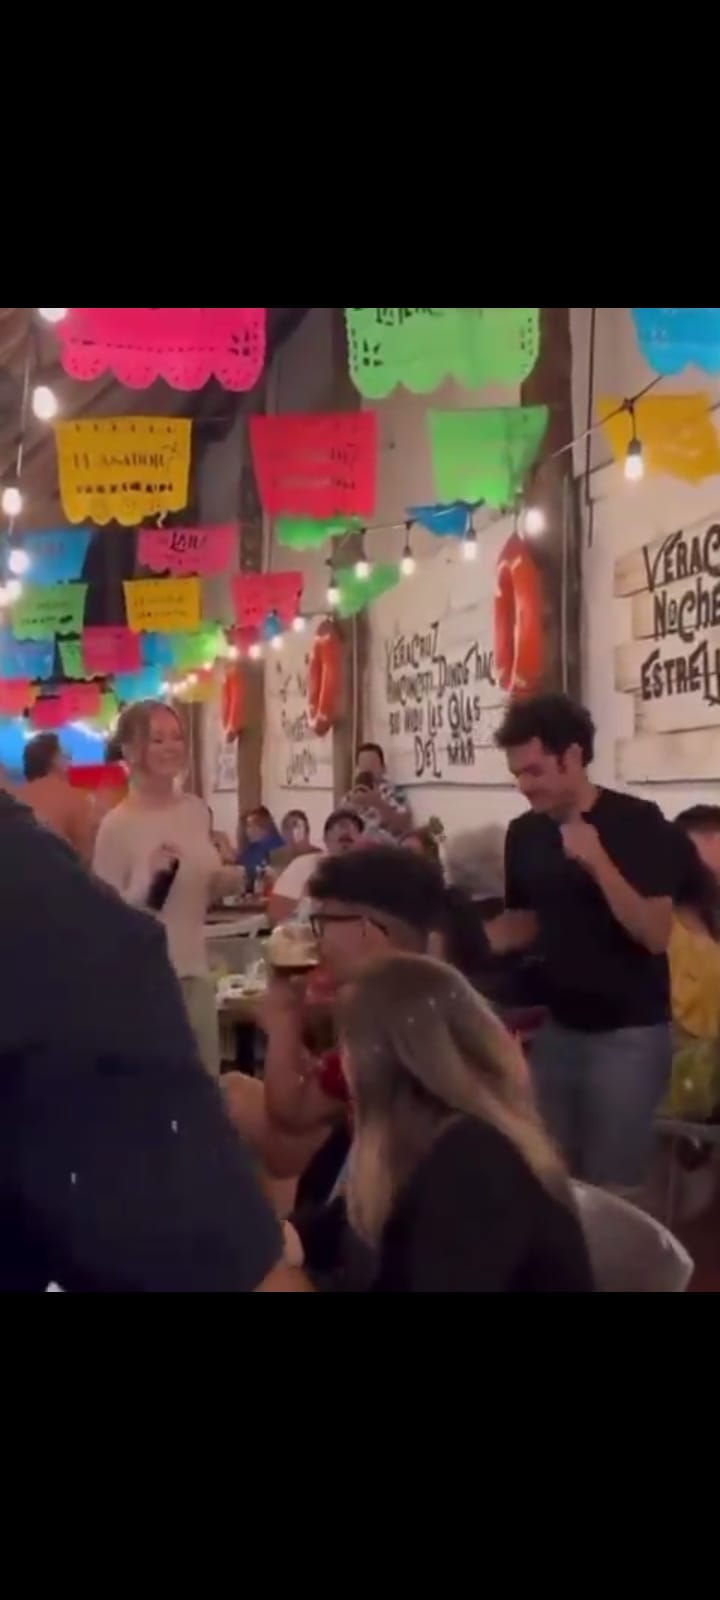 Captan a Ester Expósito actriz de la serie “Bandidos” bailando en un bar de Veracruz